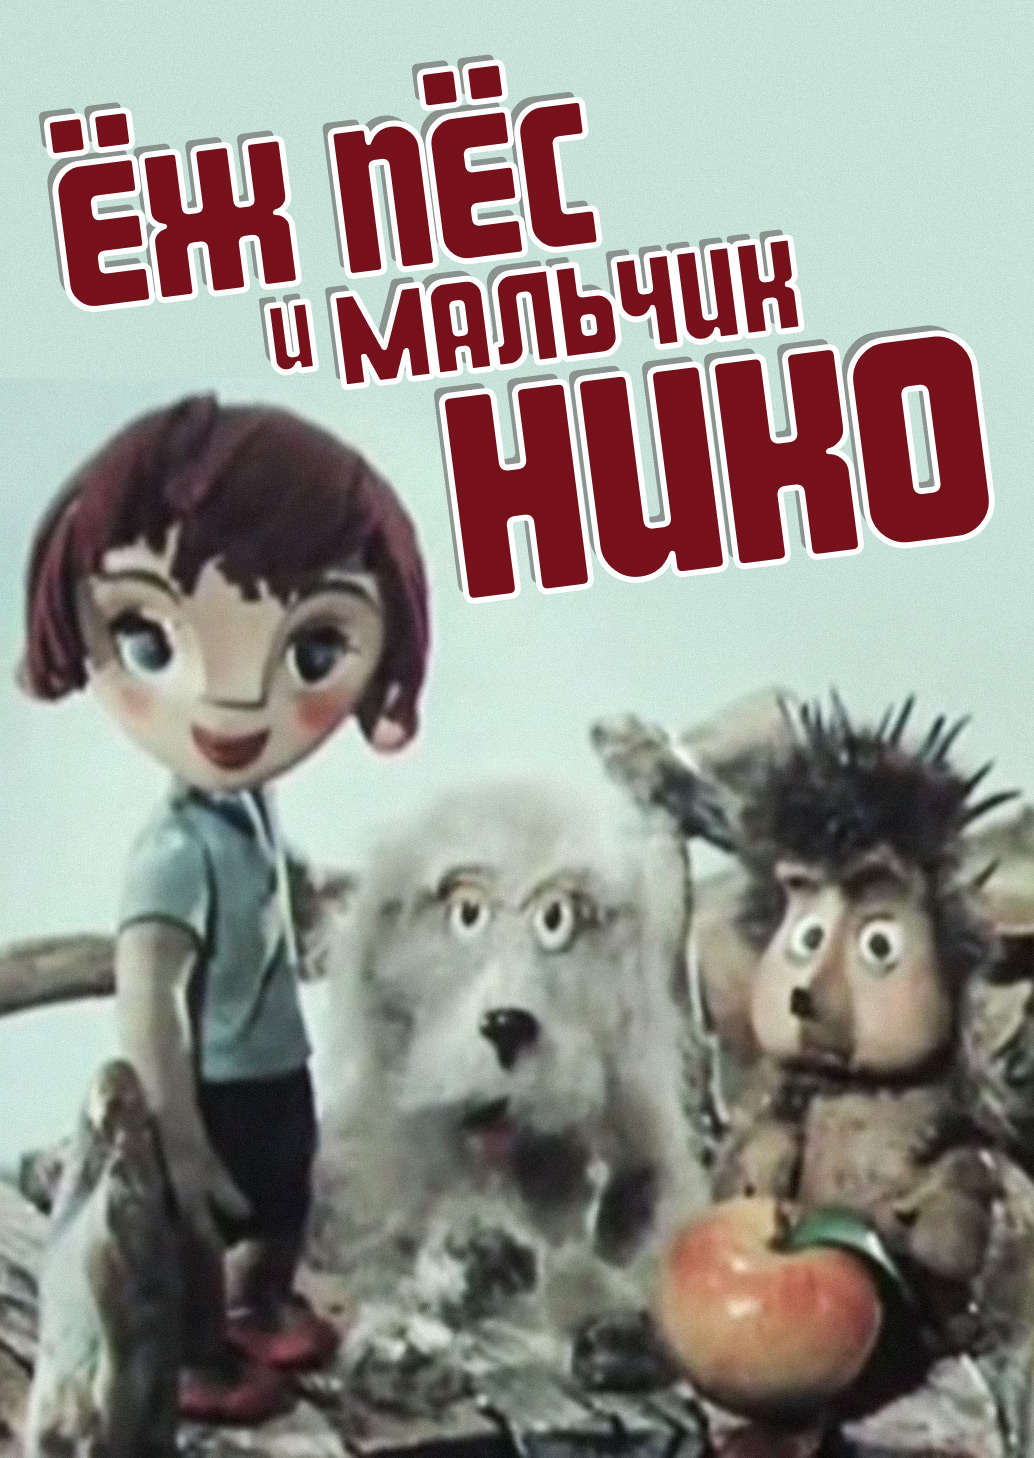 Ёж, пёс и мальчик Нико мультфильм (1984)